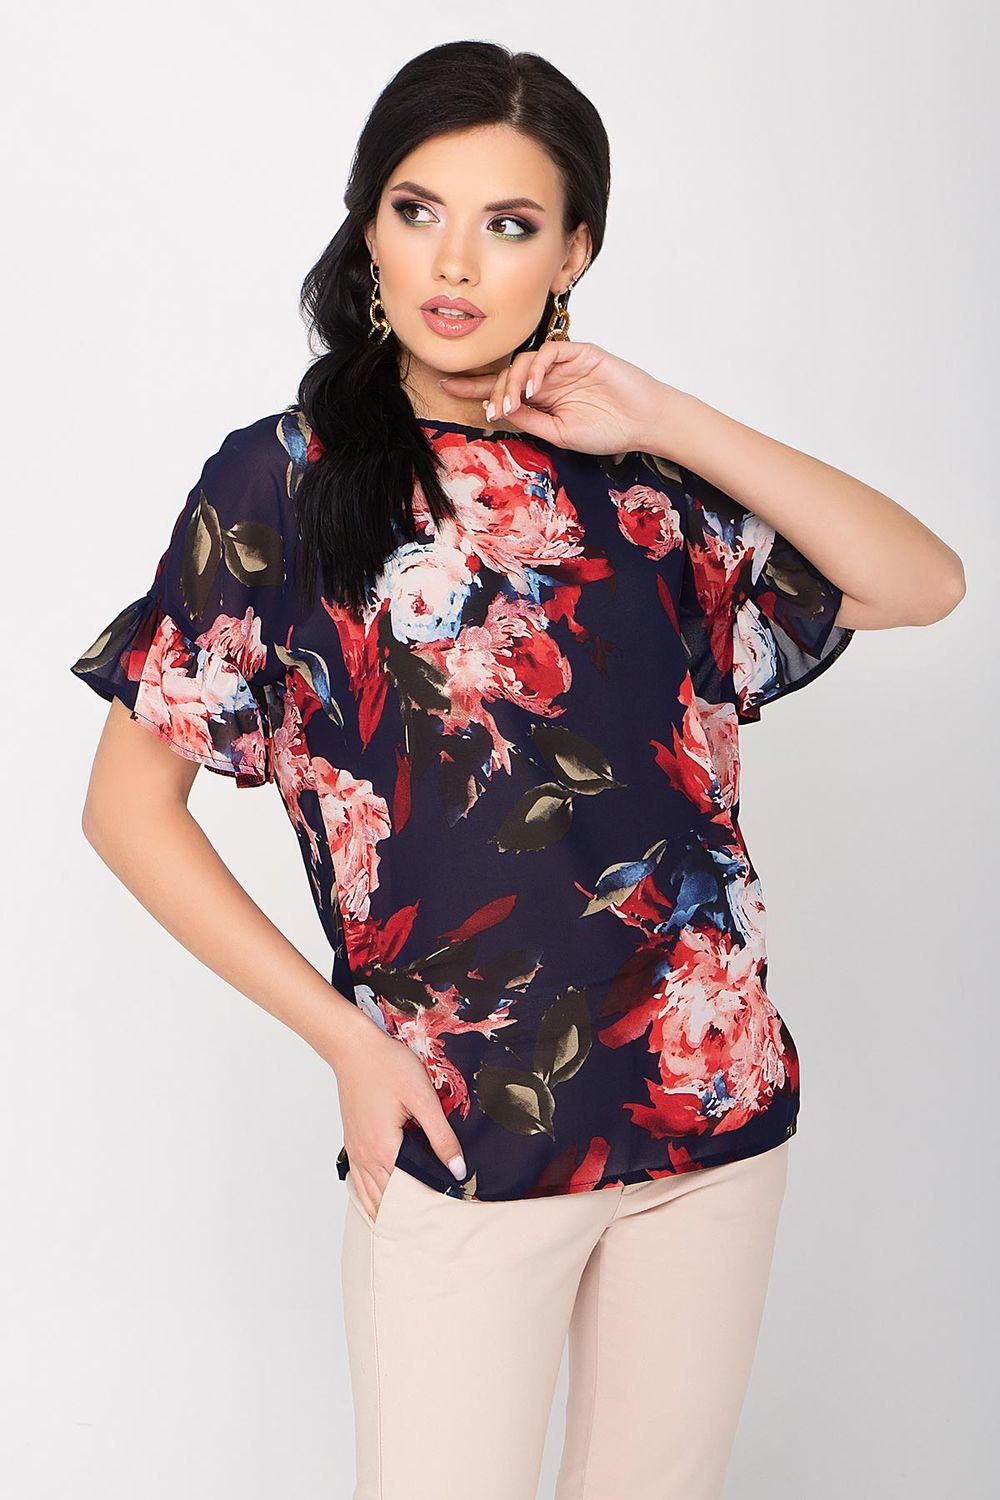 Шифоновая нарядная блузка с цветочным принтом - фото